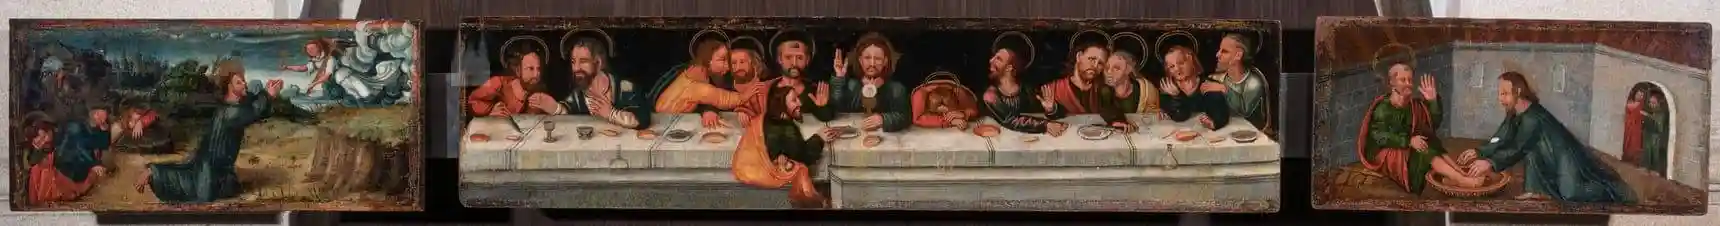 Tríptico con escenas de la Pasión. Maestro Fadrique. Primer cuarto del XVI. Se trata de la predela de un retablo.